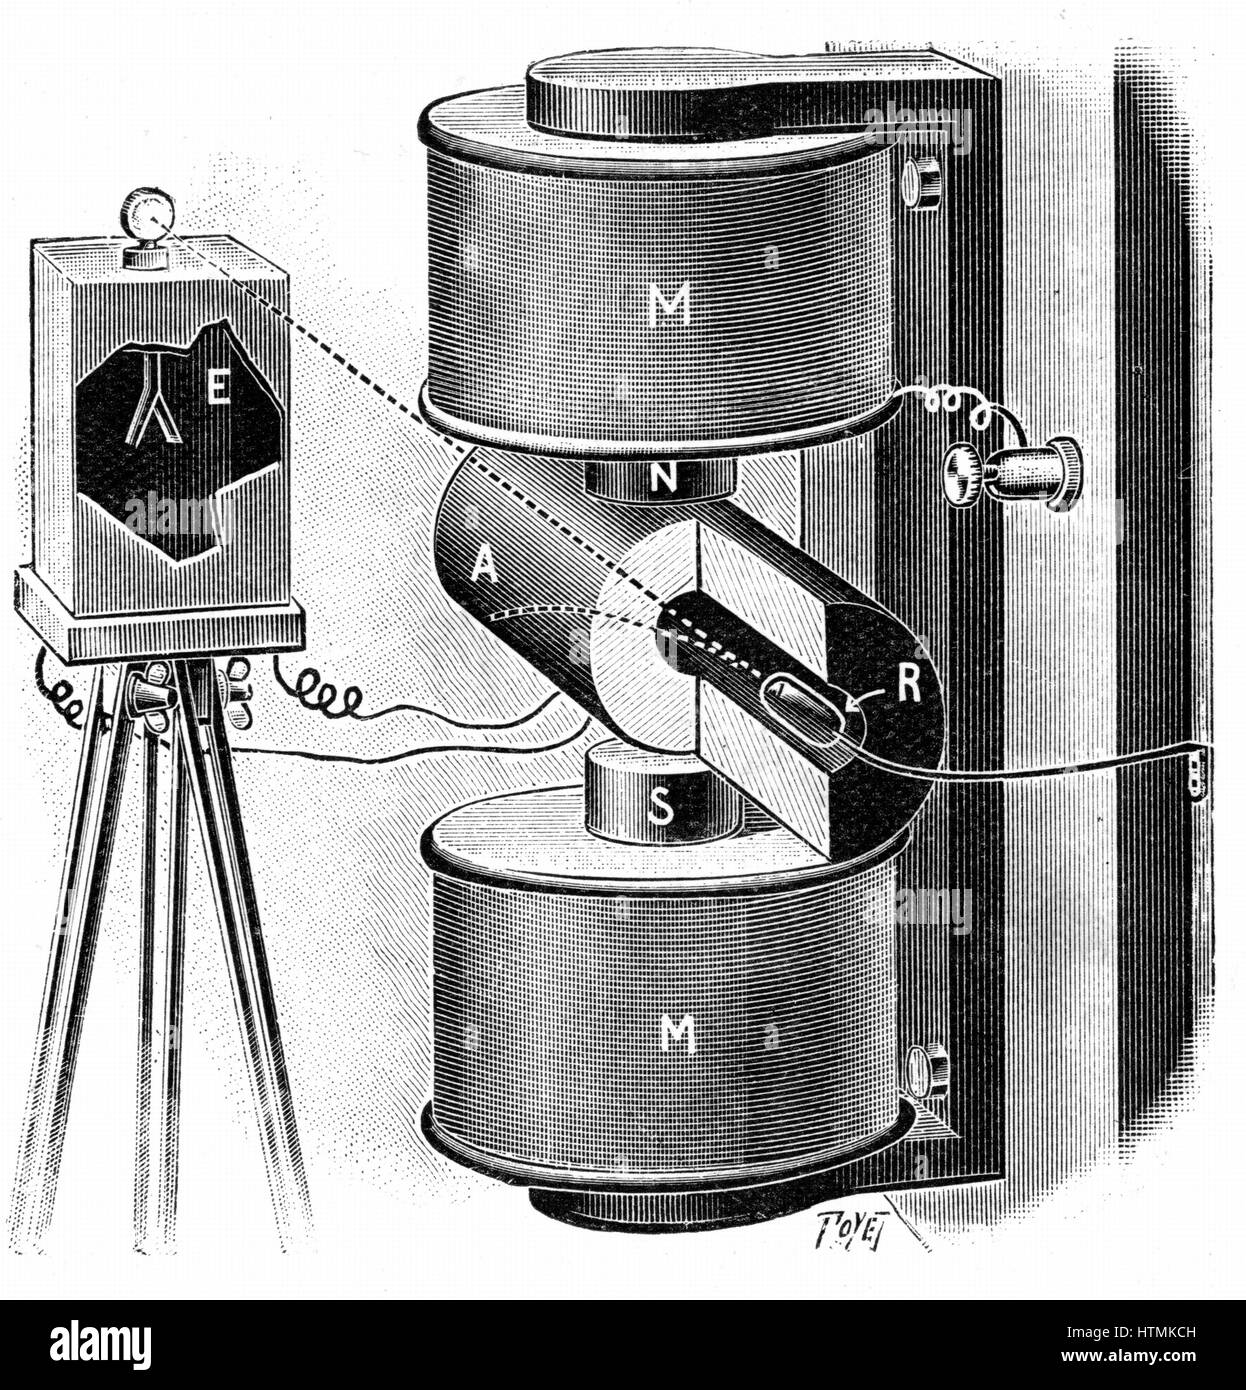 Apparat von den Kurien verwendet, um die Durchbiegung der Beta-Strahlen von Radium (R) im Magnetfeld zu untersuchen. Gravur veröffentlicht Paris 1904 Stockfoto